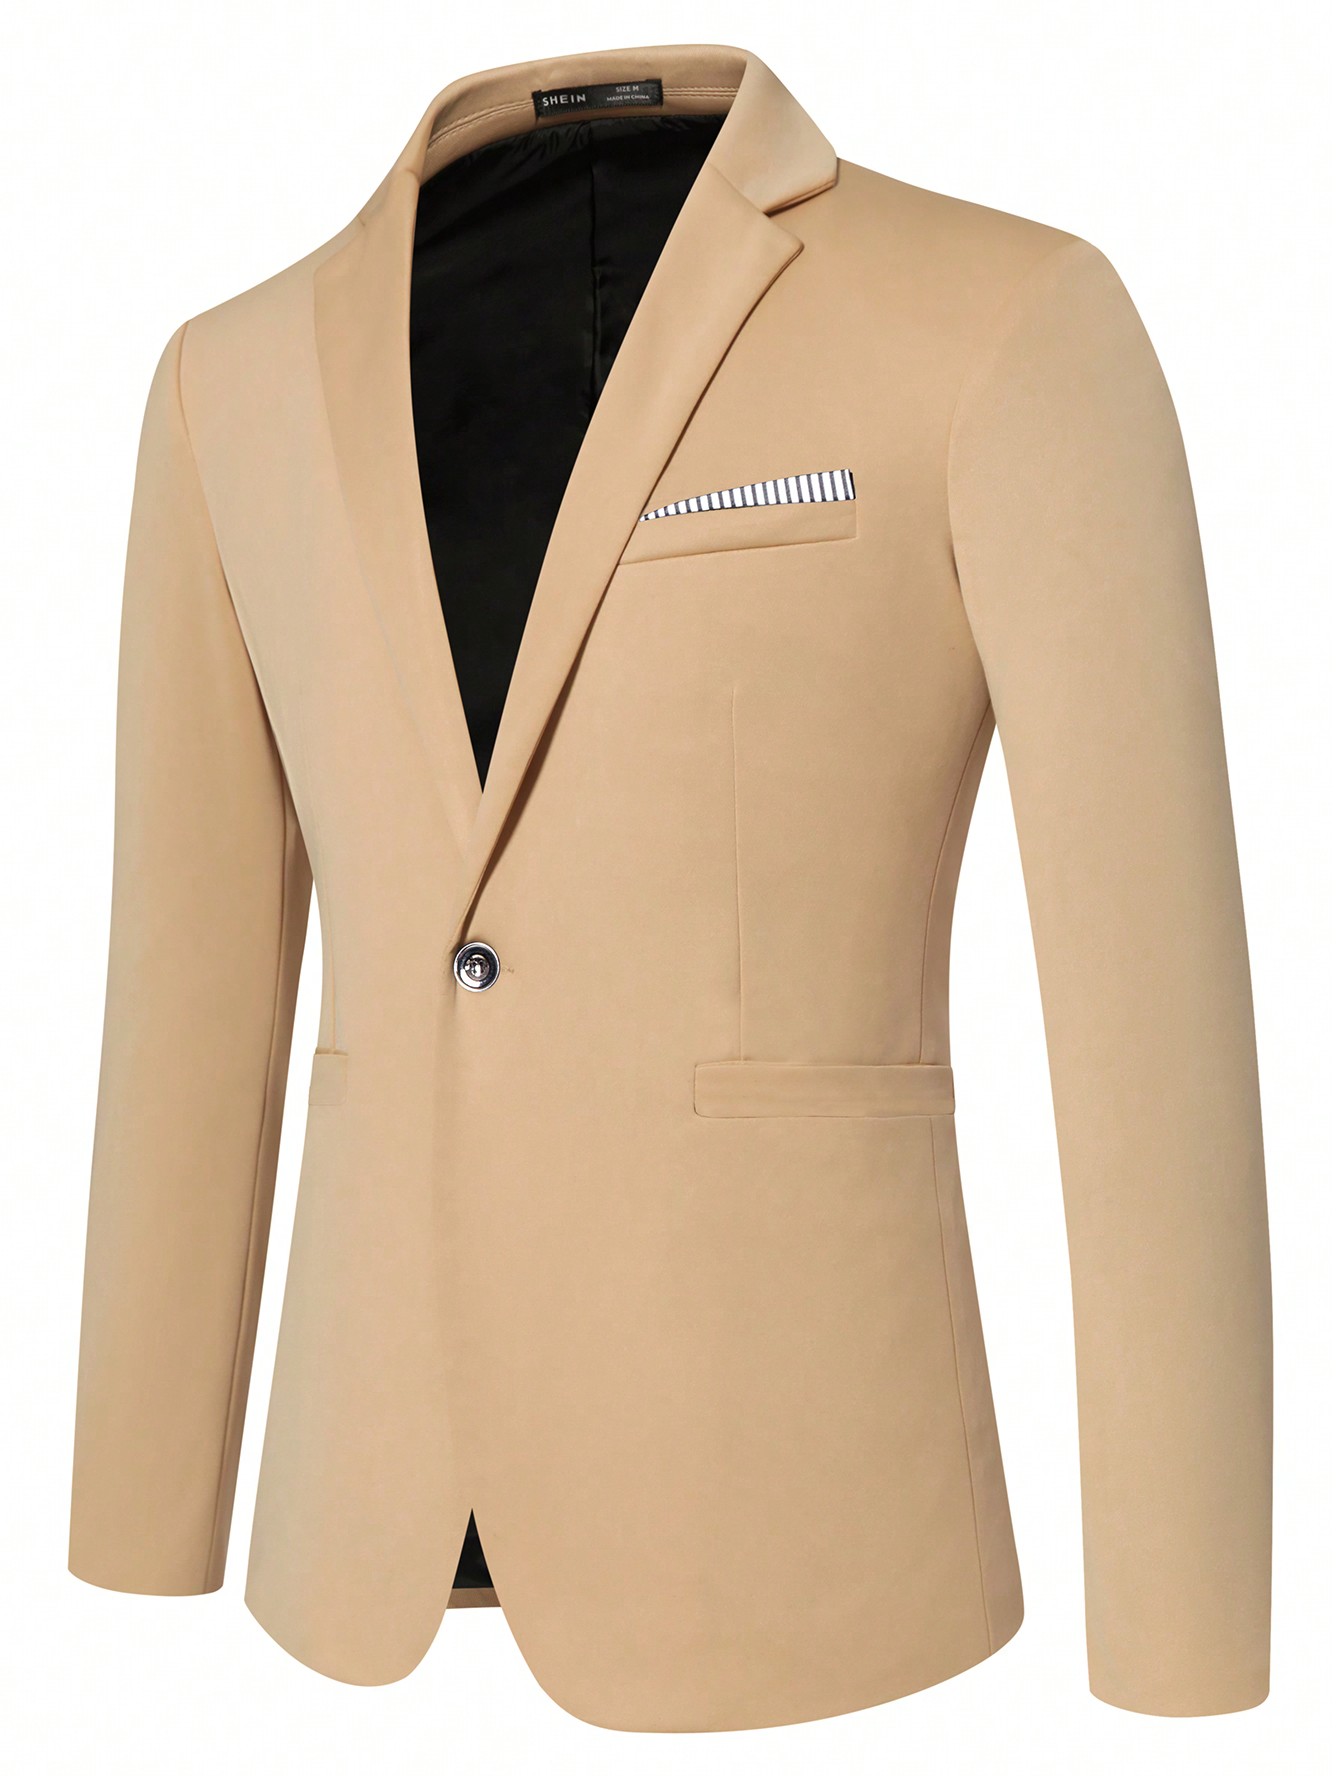 Мужской пиджак с длинными рукавами и зубчатыми лацканами Manfinity Mode, хаки